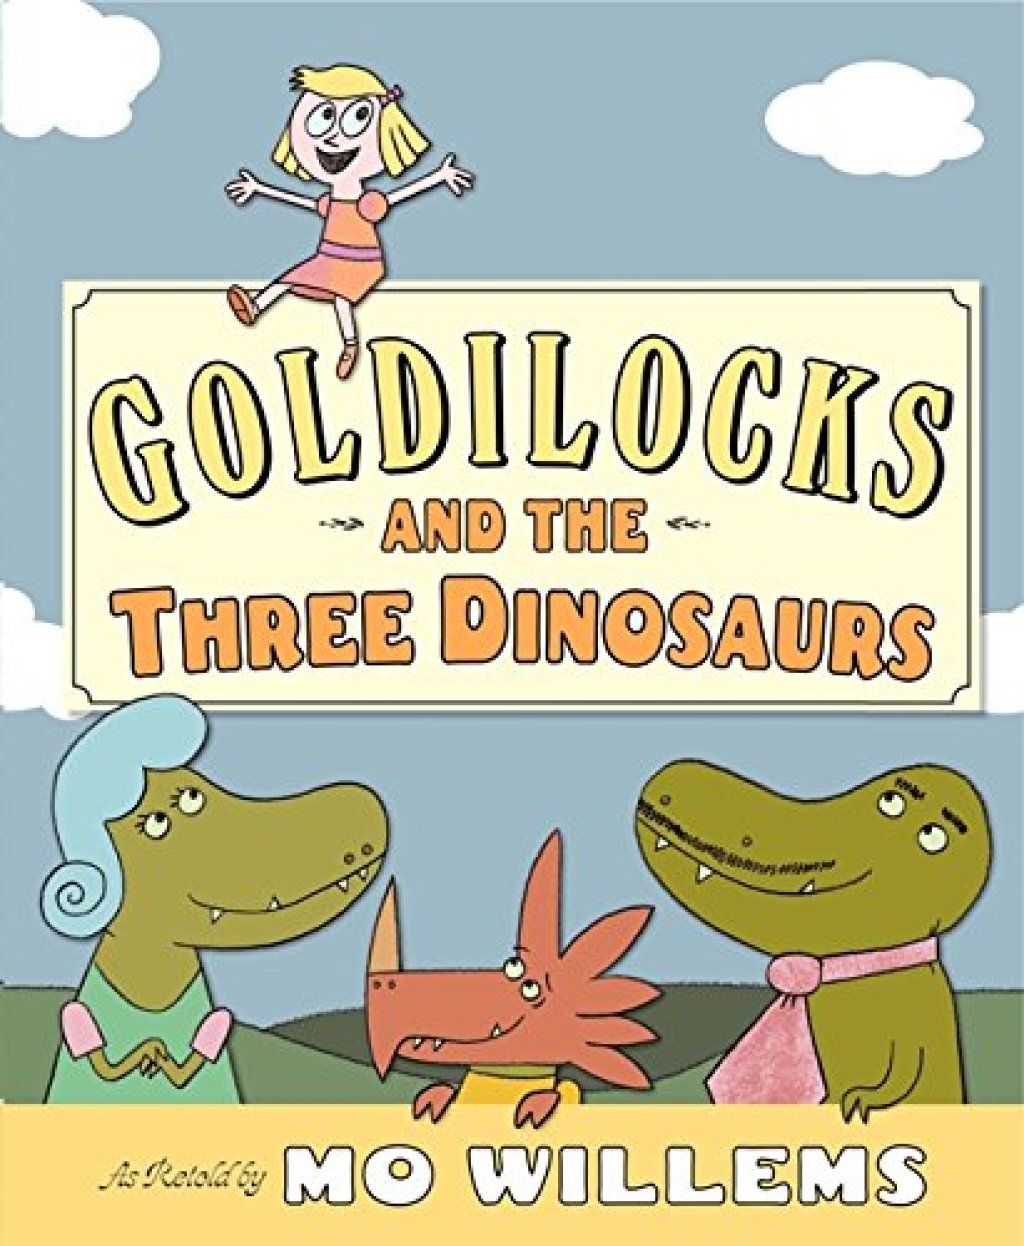 Goldilocksと3人の恐竜MoWillemsが子供から冗談を言う